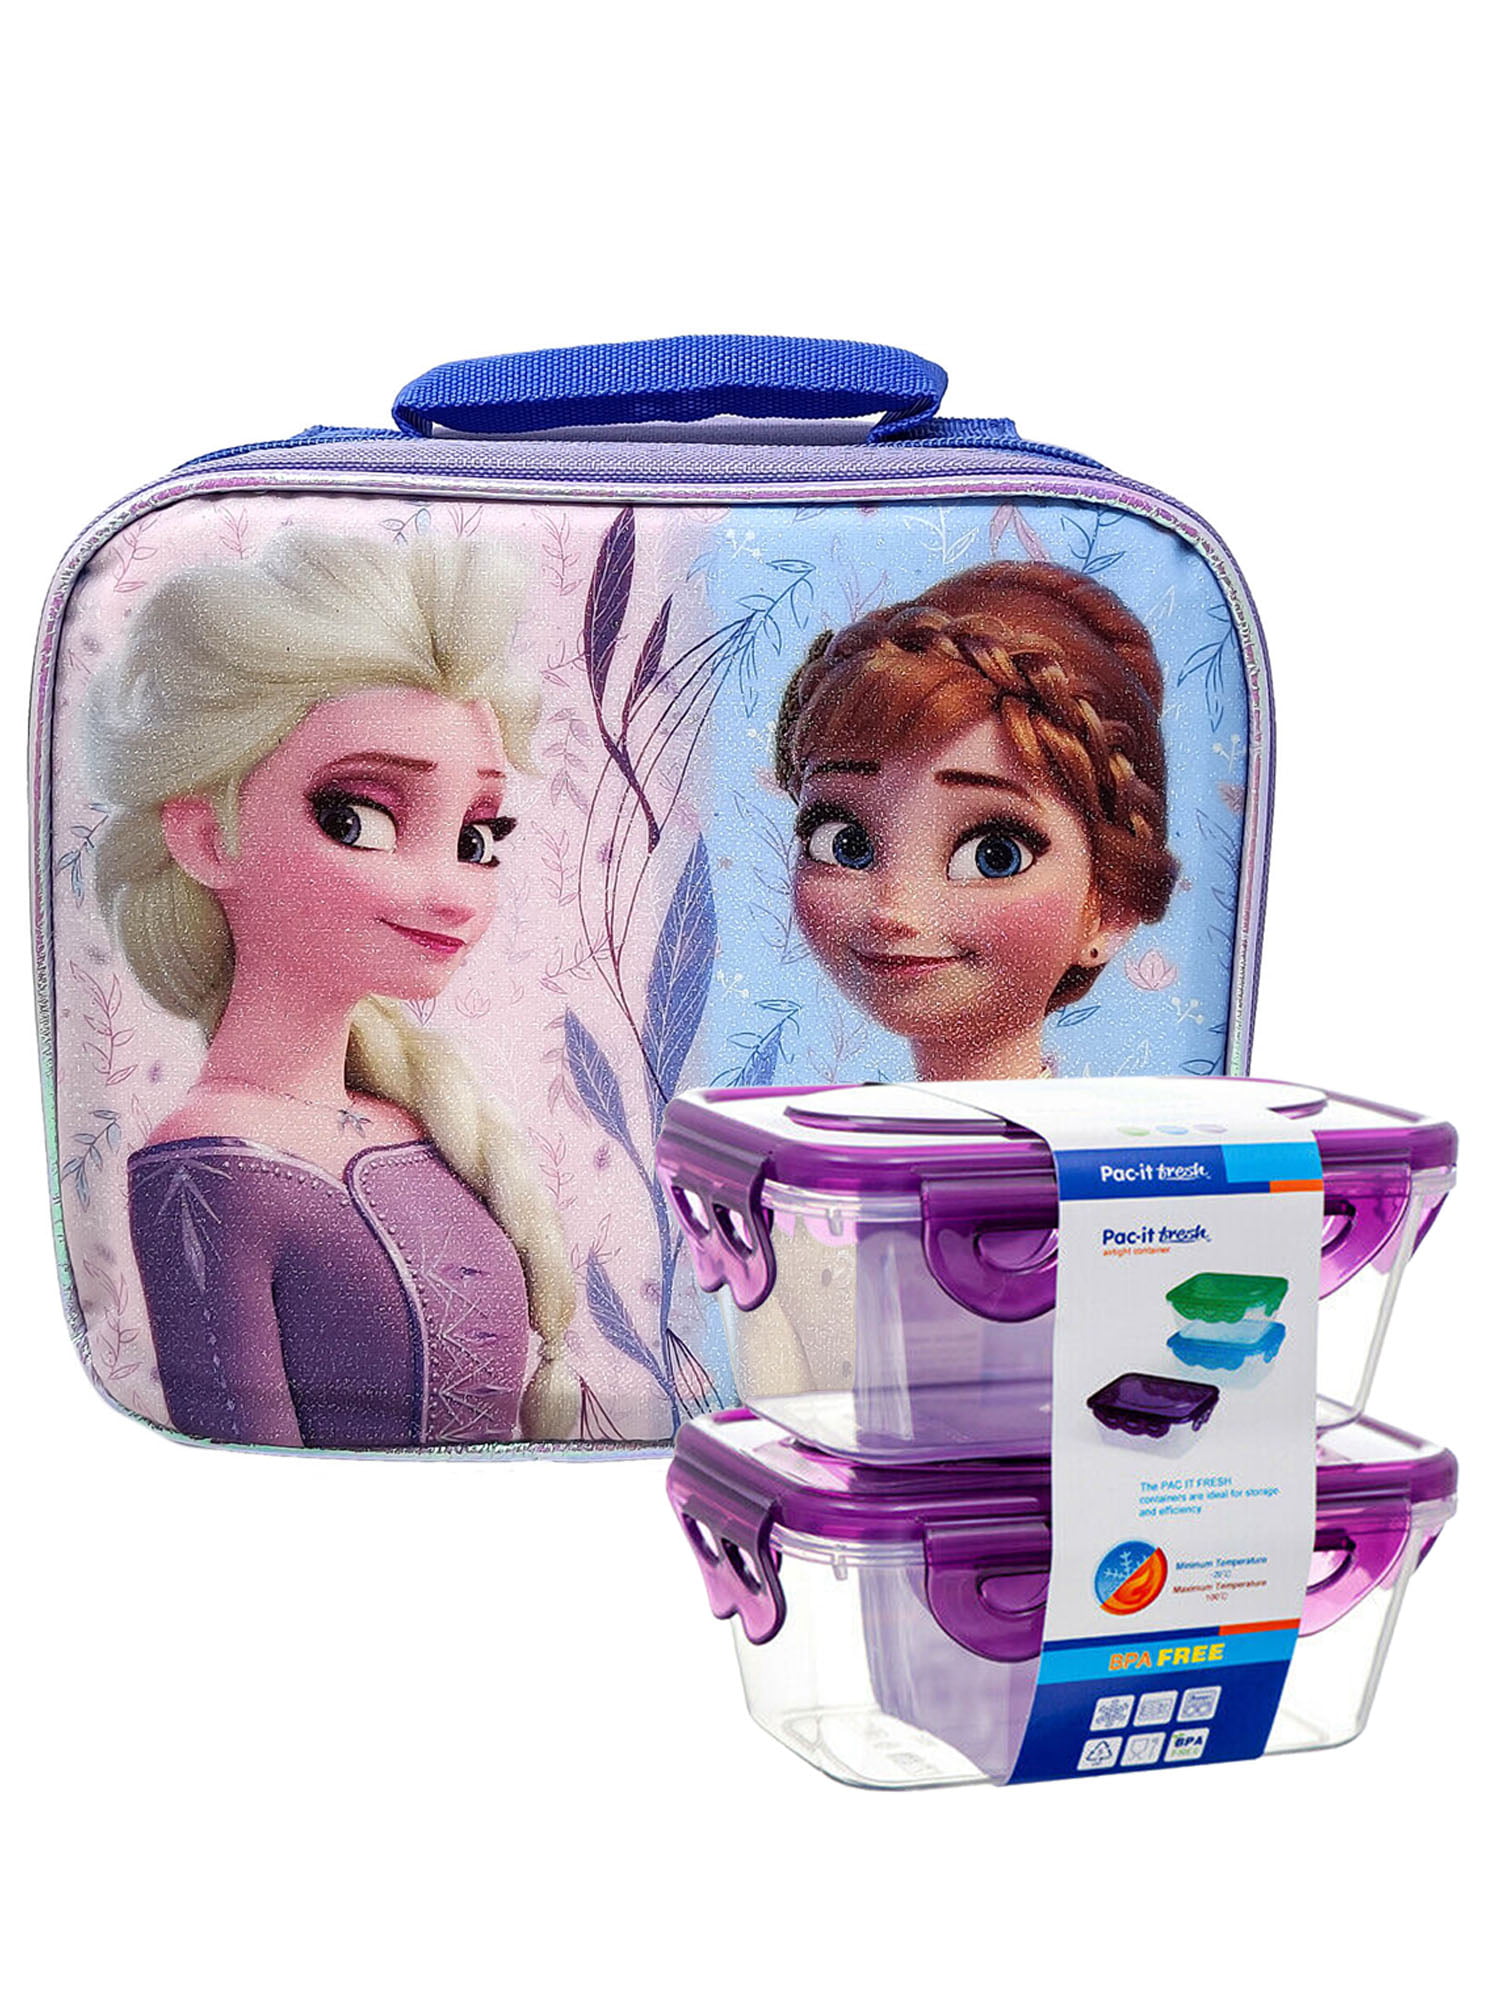 FROZEN ELSA & ANNA INSULATED SCHOOL NURSERY LUNCH SANDWICH BAG BOX BLUE/PINK NEW 